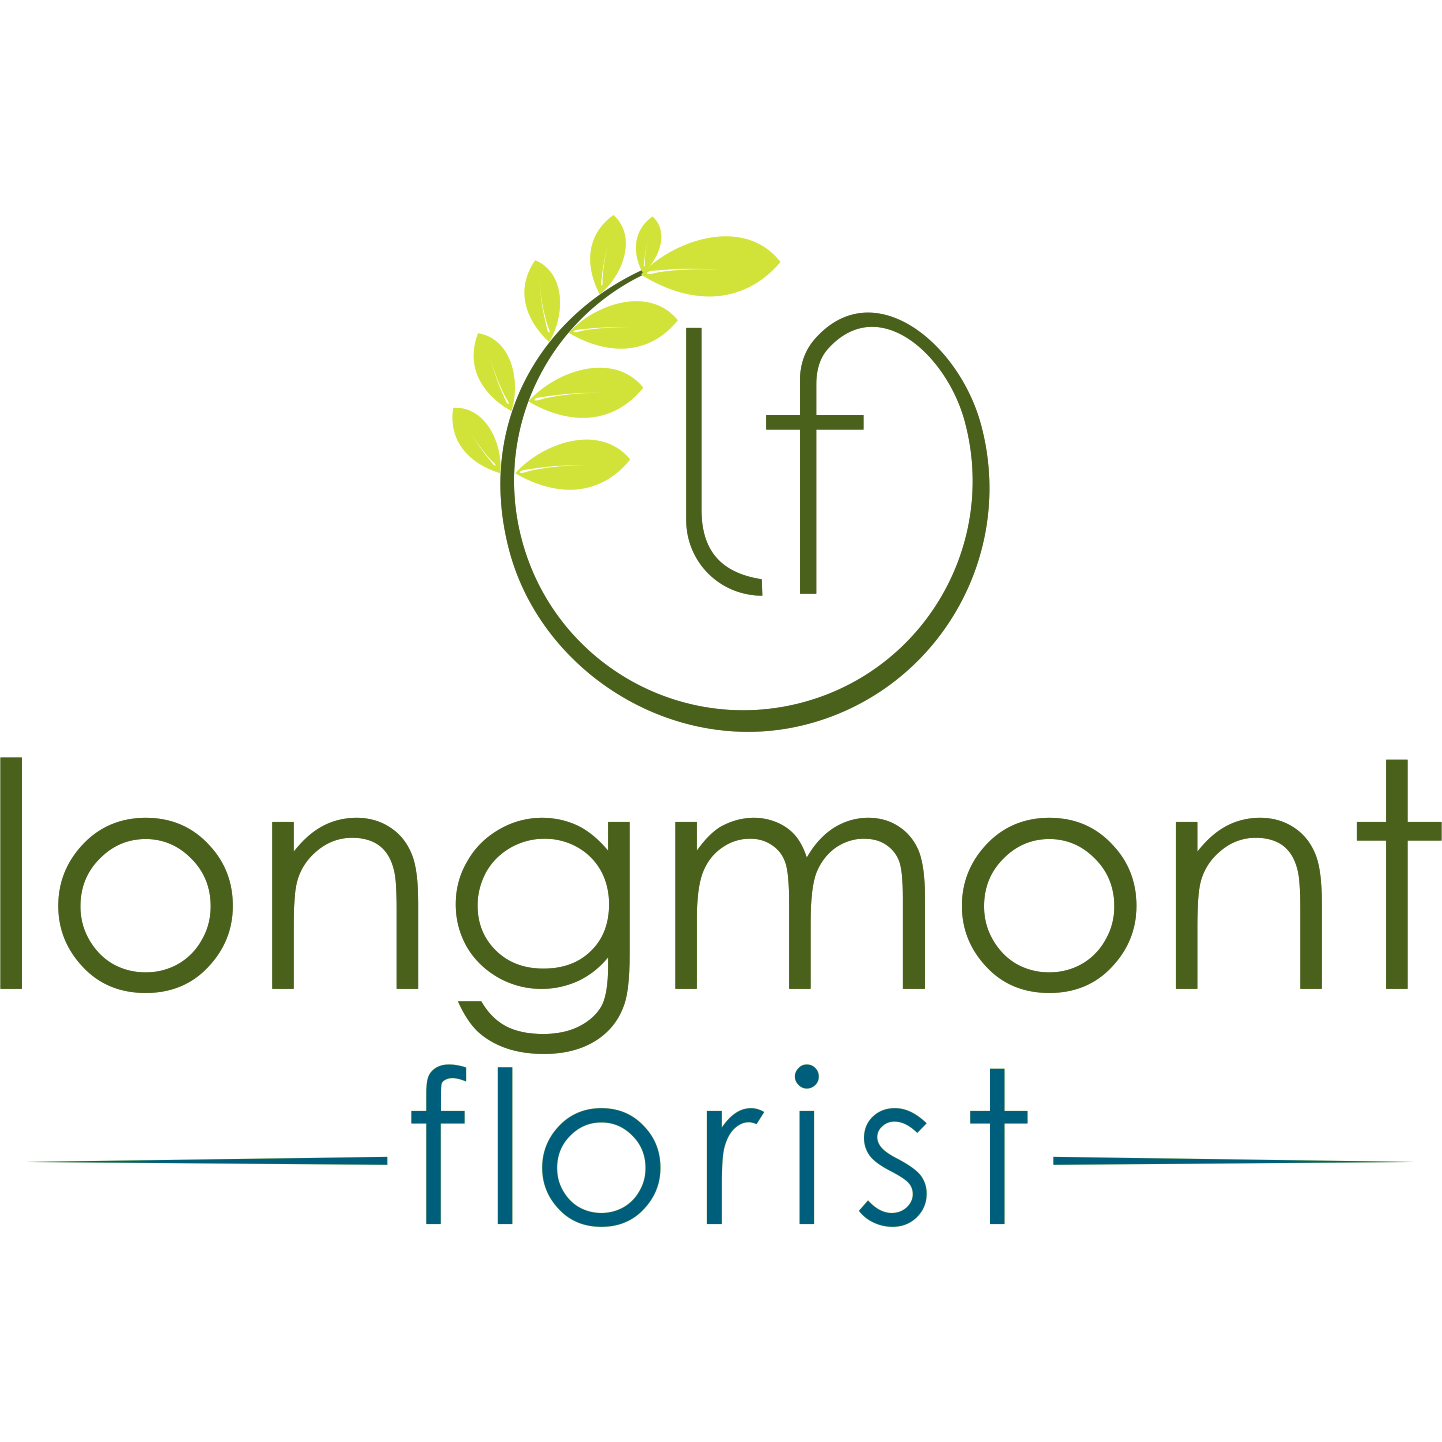 Longmont Florist